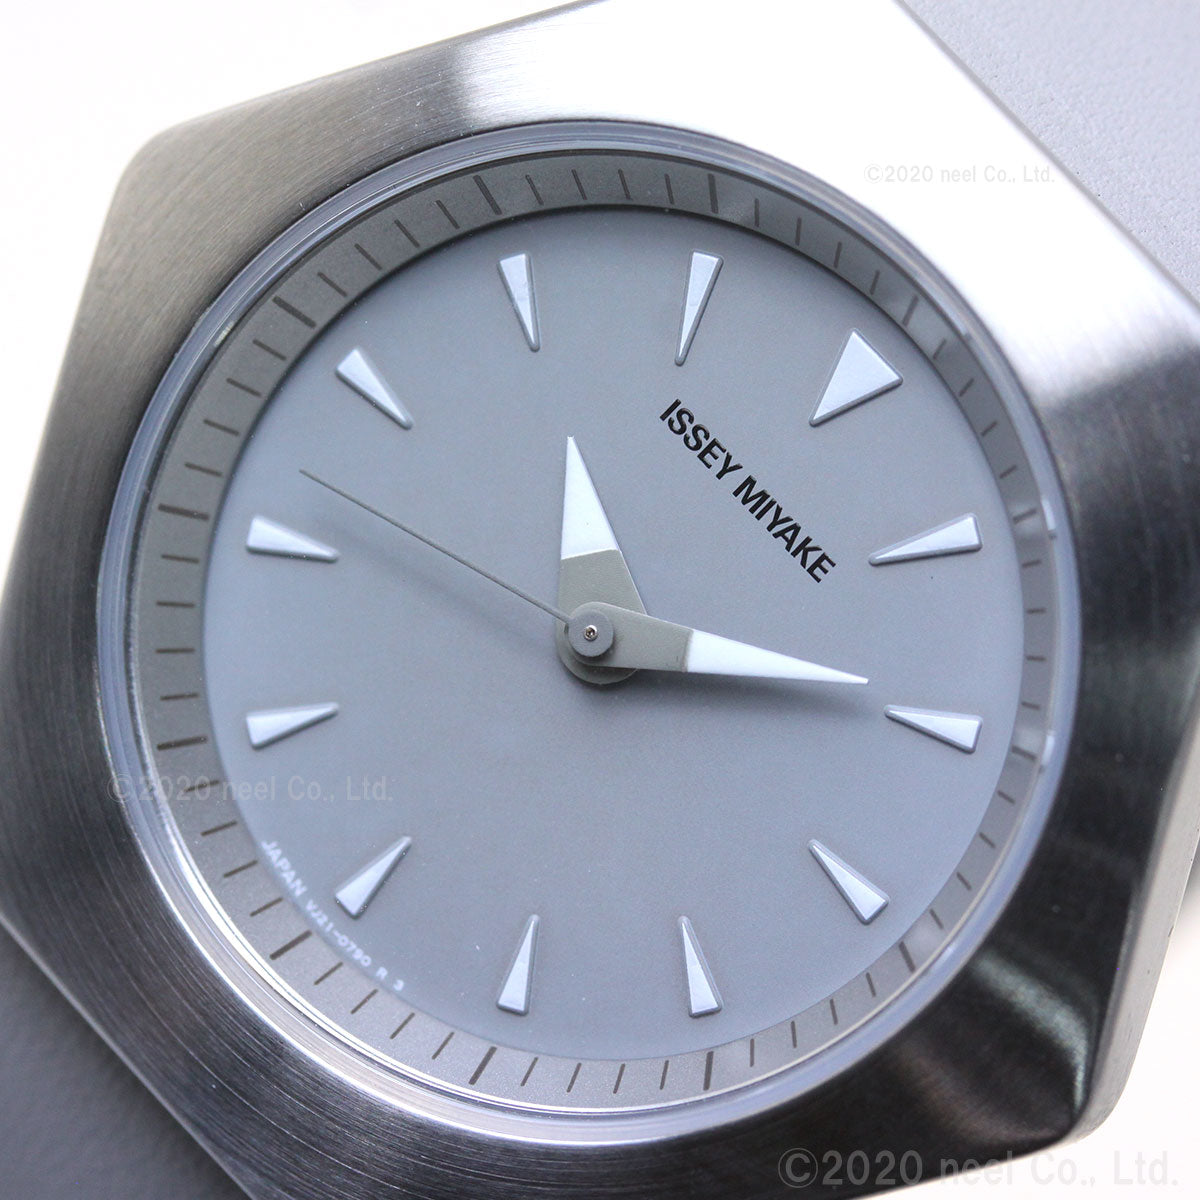 イッセイミヤケ ISSEY MIYAKE 腕時計 メンズ レディース ロク ROKU コンスタンティン・グルチッチ氏 コラボモデル NYAM003